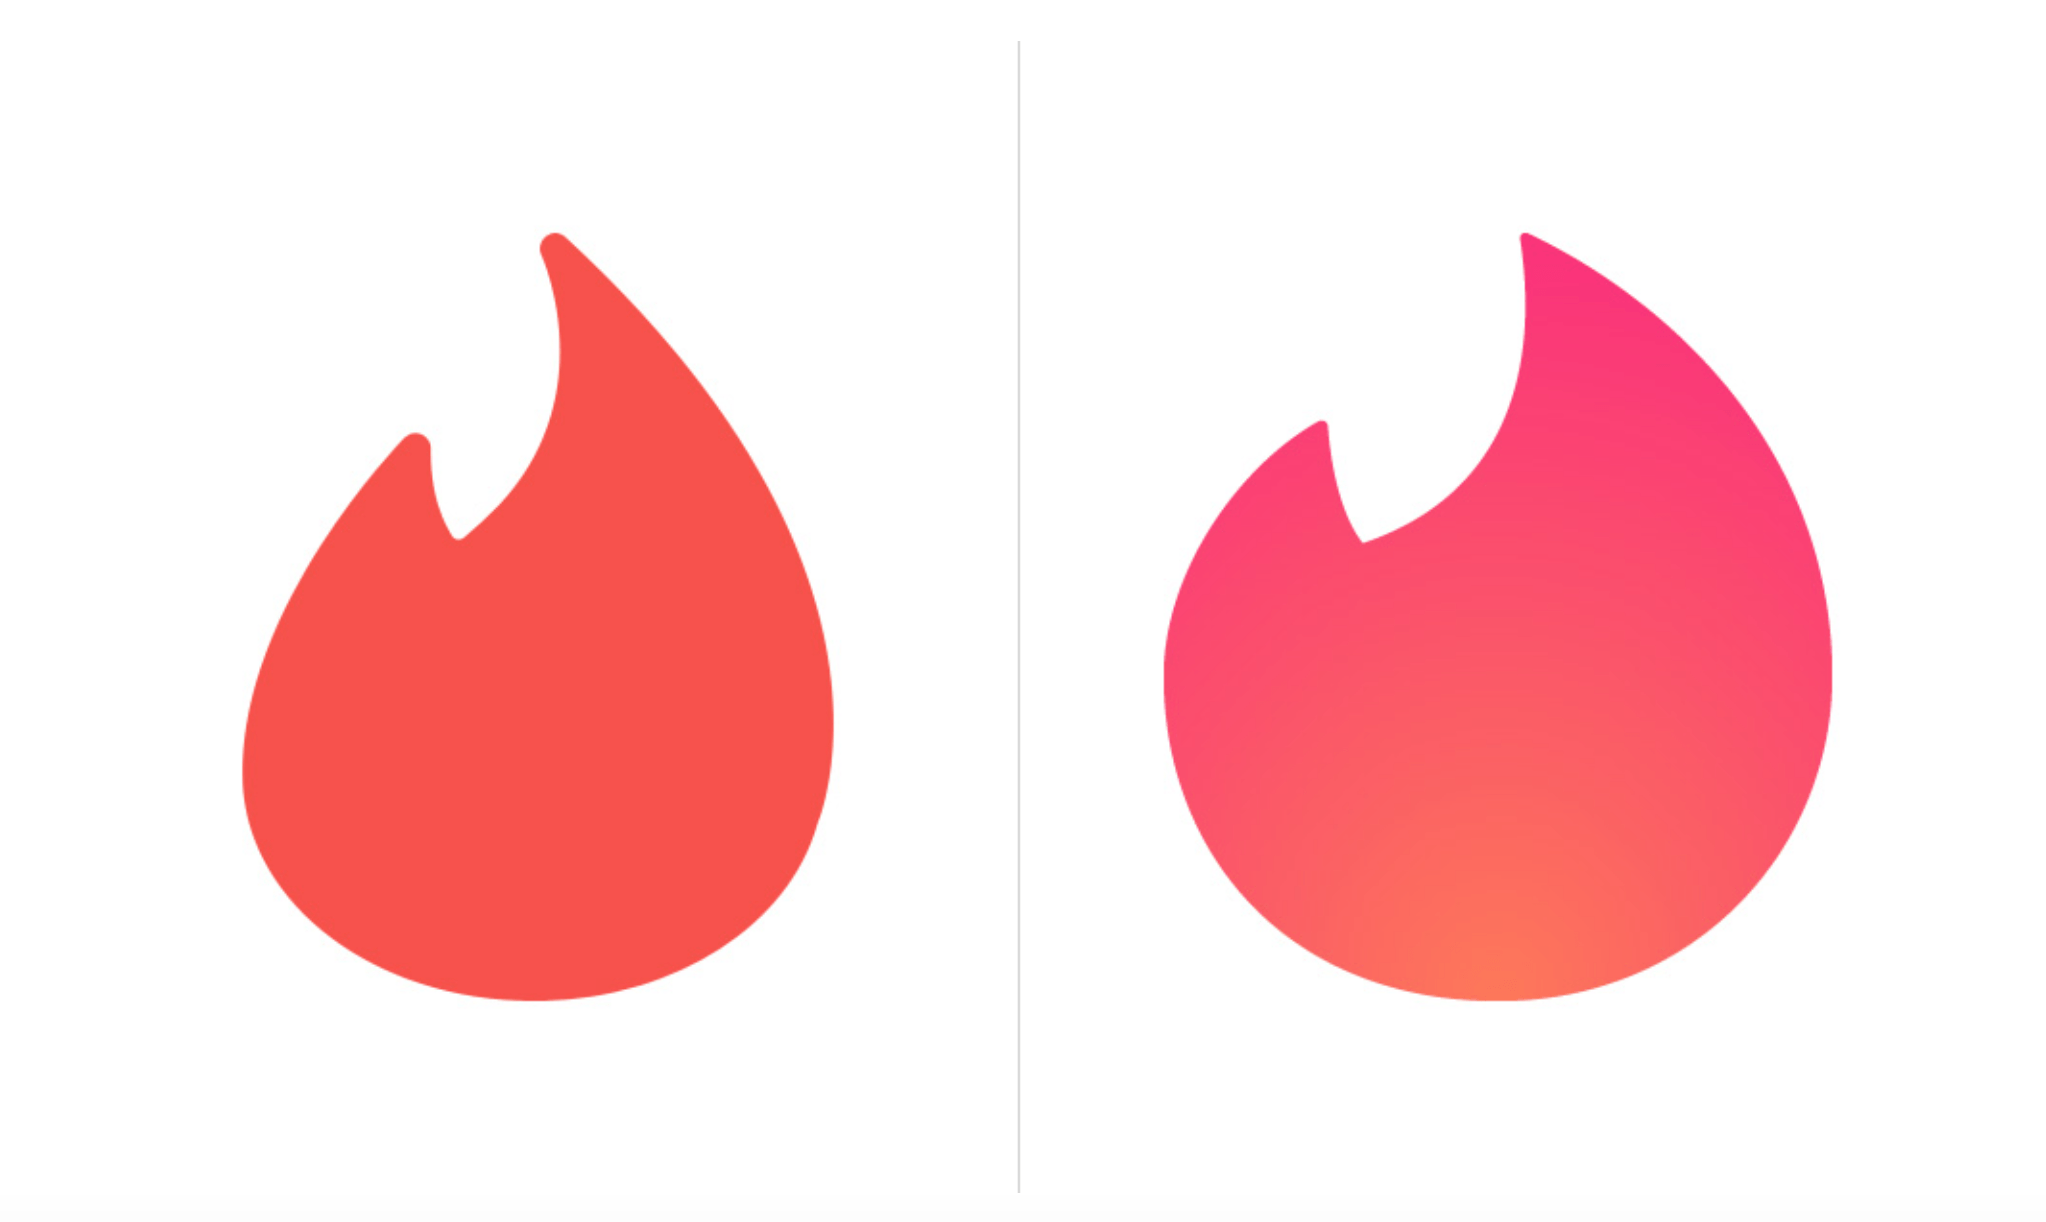 Tinder Logo - Tinder Updates Design Of Flame Logo - Global Dating Insights